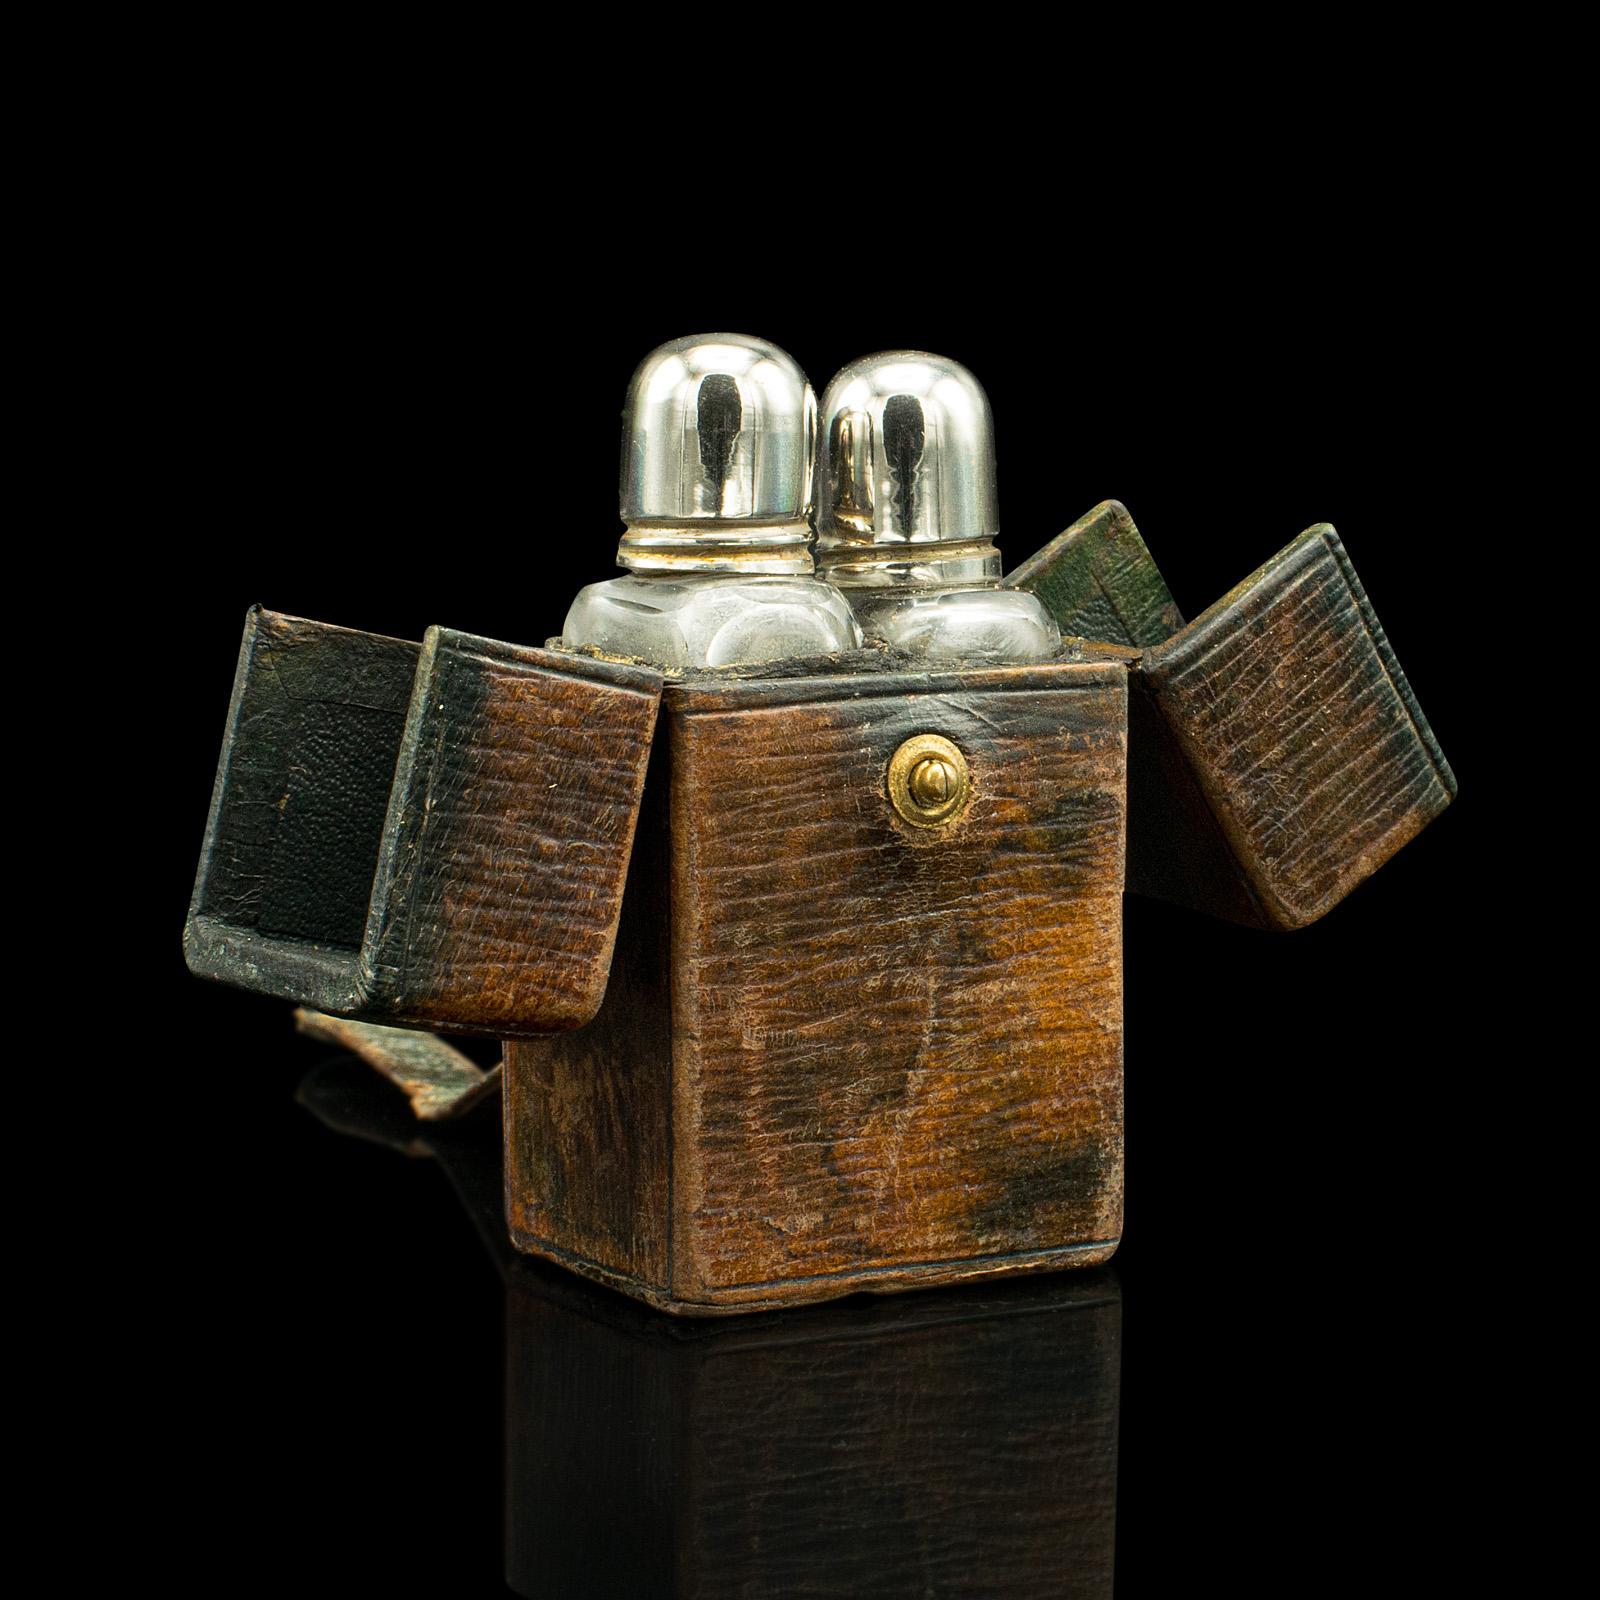 Dies ist ein kleines antikes Reiseparfümetui. Ein englischer Flaschenhalter aus Leder und Glas in der Art von Asprey, aus der viktorianischen Zeit, um 1850.

Zierlich und charmant, mit einem ansprechenden, abgenutzten Aussehen
Zeigt eine